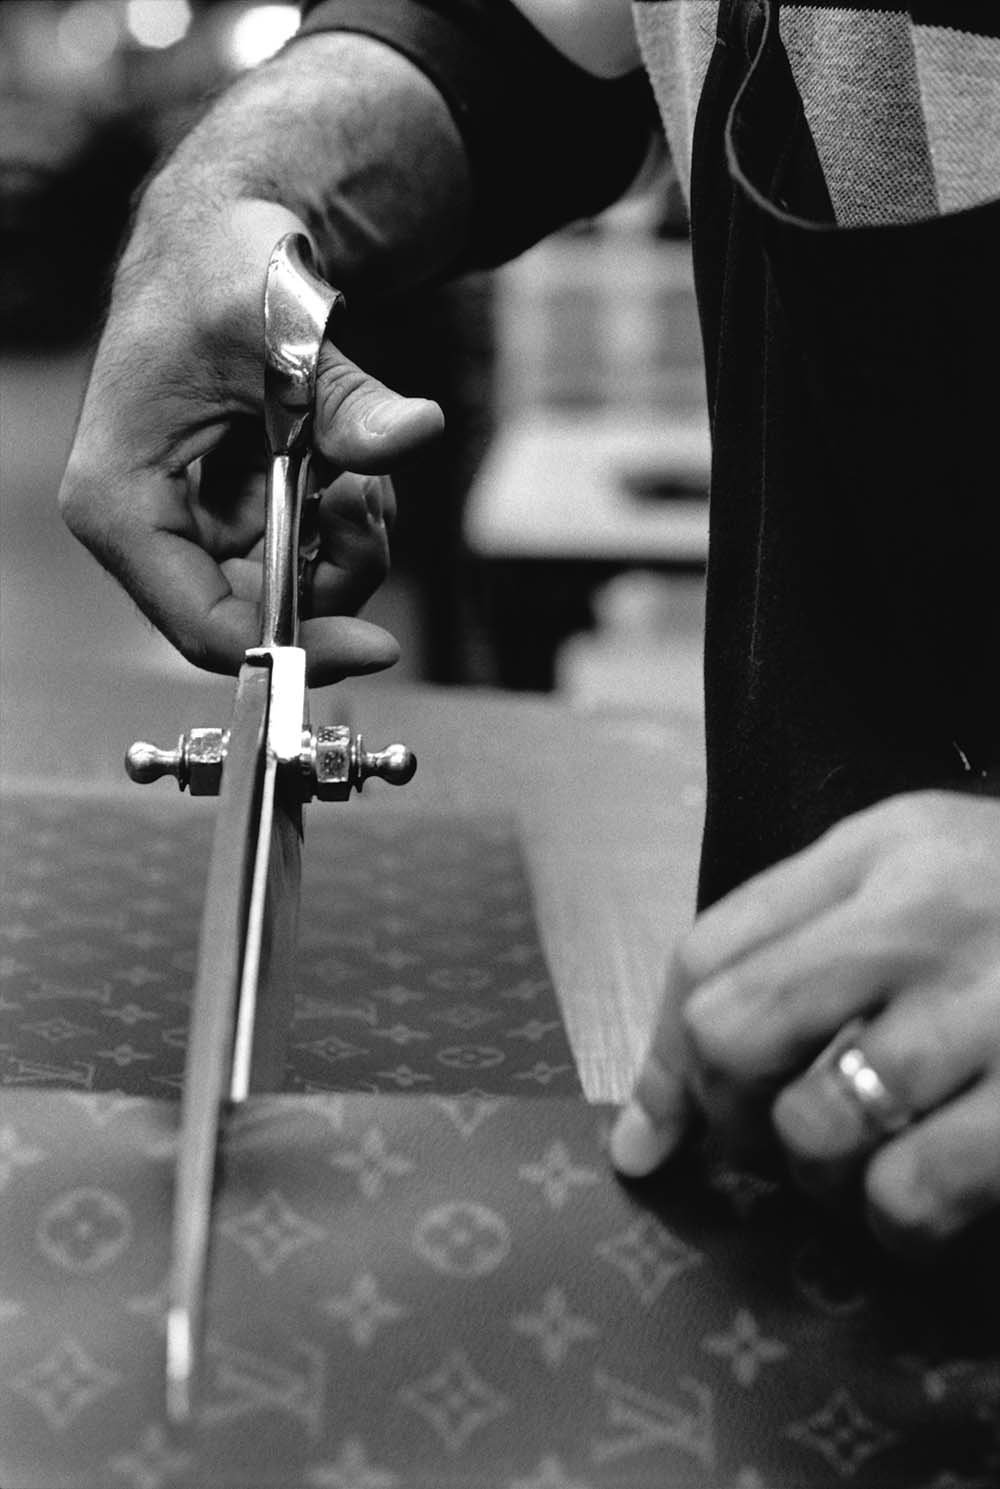 Fase de produção de uma bolsa "élipse" em canvas Monogram nas oficinas da Louis Vuitton em 4 de fevereiro de 1999 em Asnières, França. Na foto é posível ver as mãos de uma pessoa com uma tesoura grande e própria para couro cortando otecido.